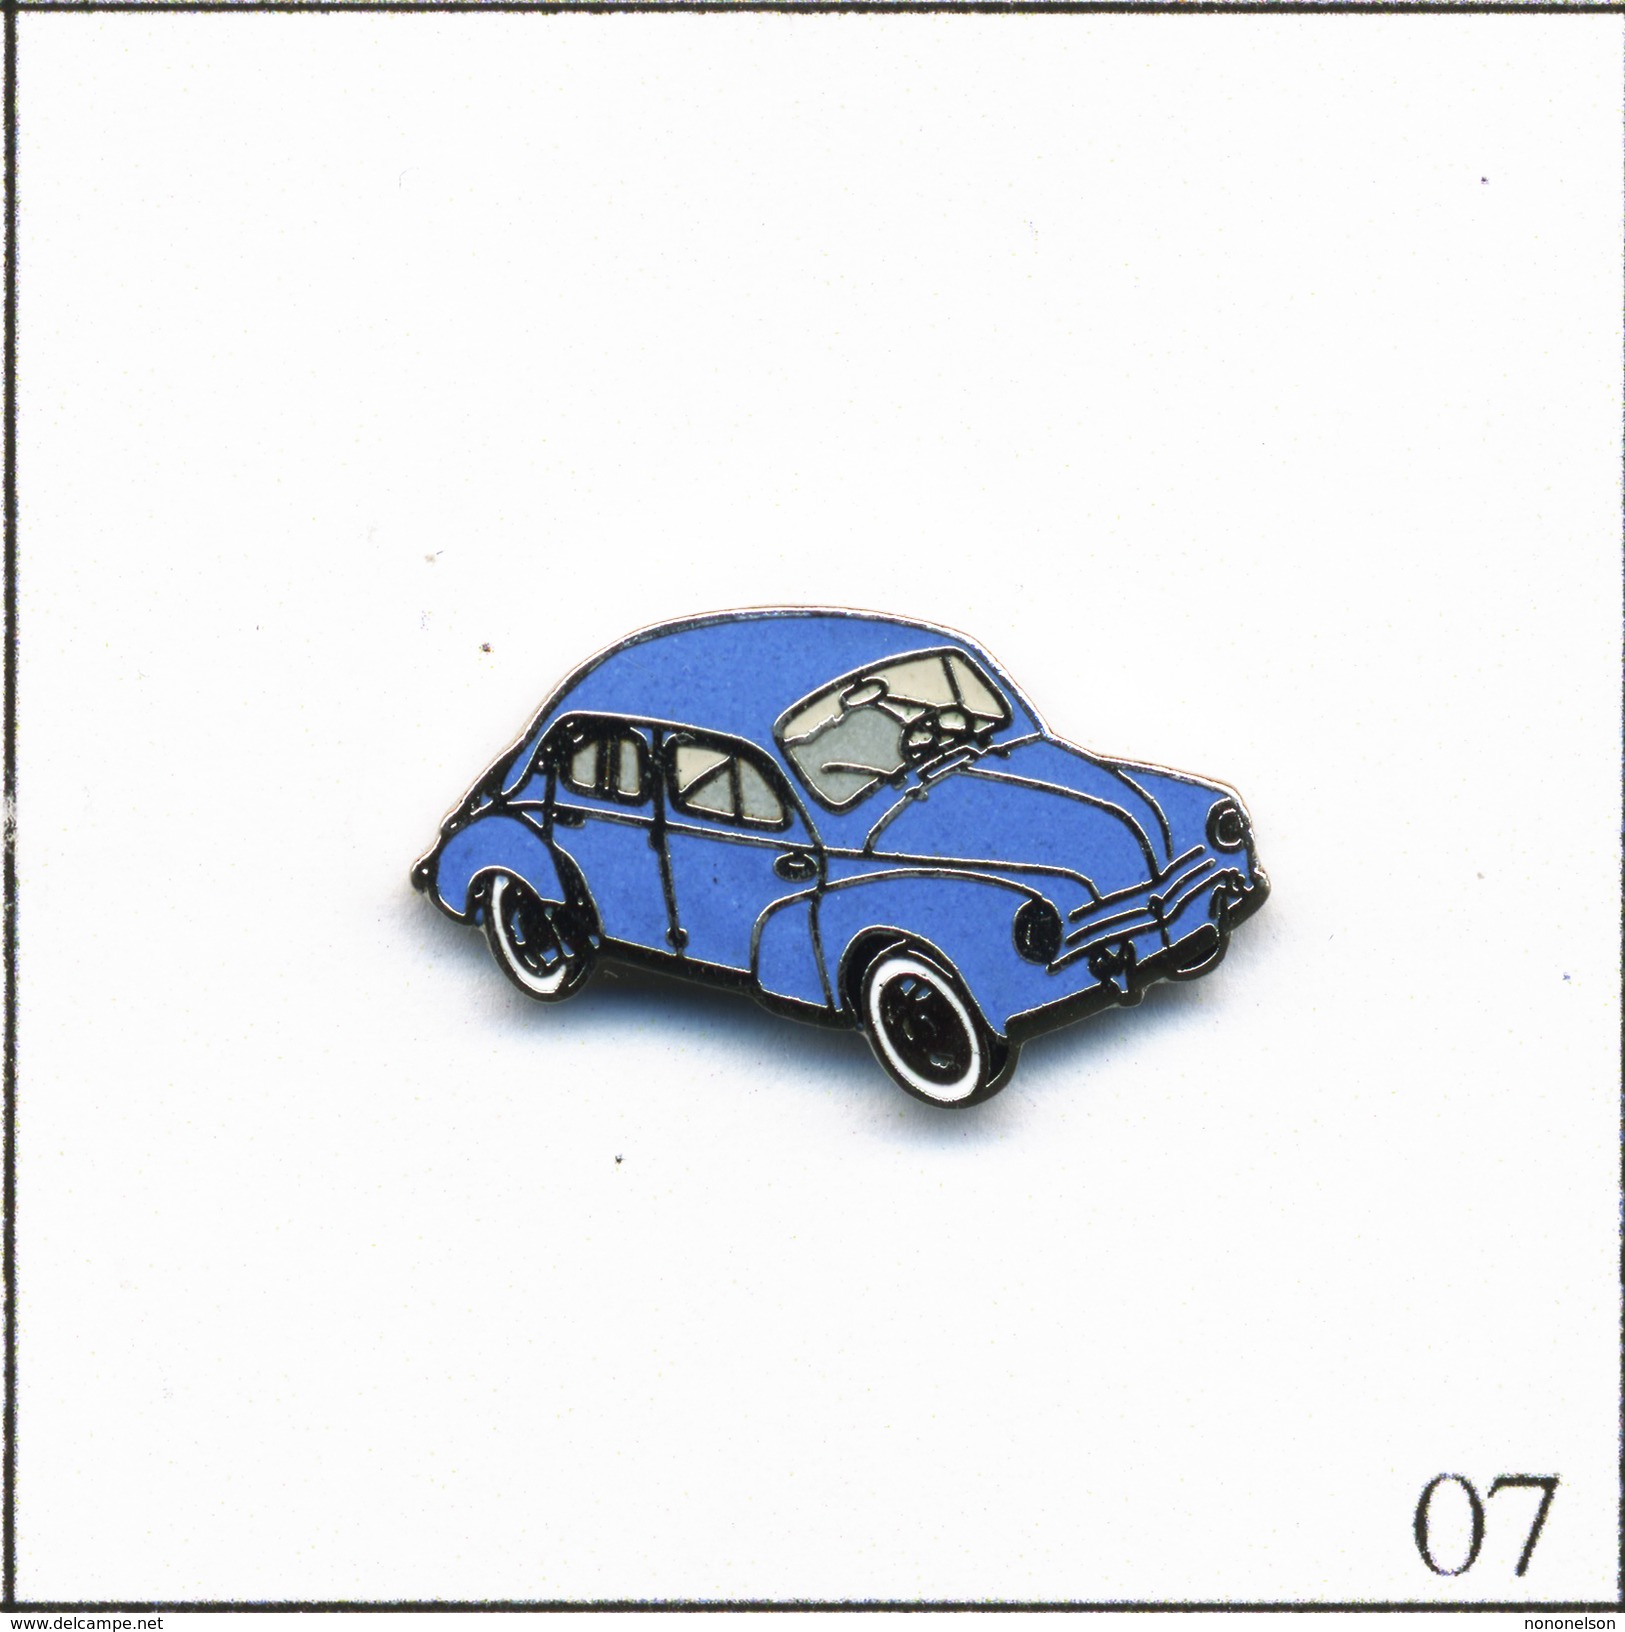 Pin's Automobile - Renault 4CV (1956) - Version Bleue. Estampillé J.Y Segalen Collection. EGF. T550-07 - Renault